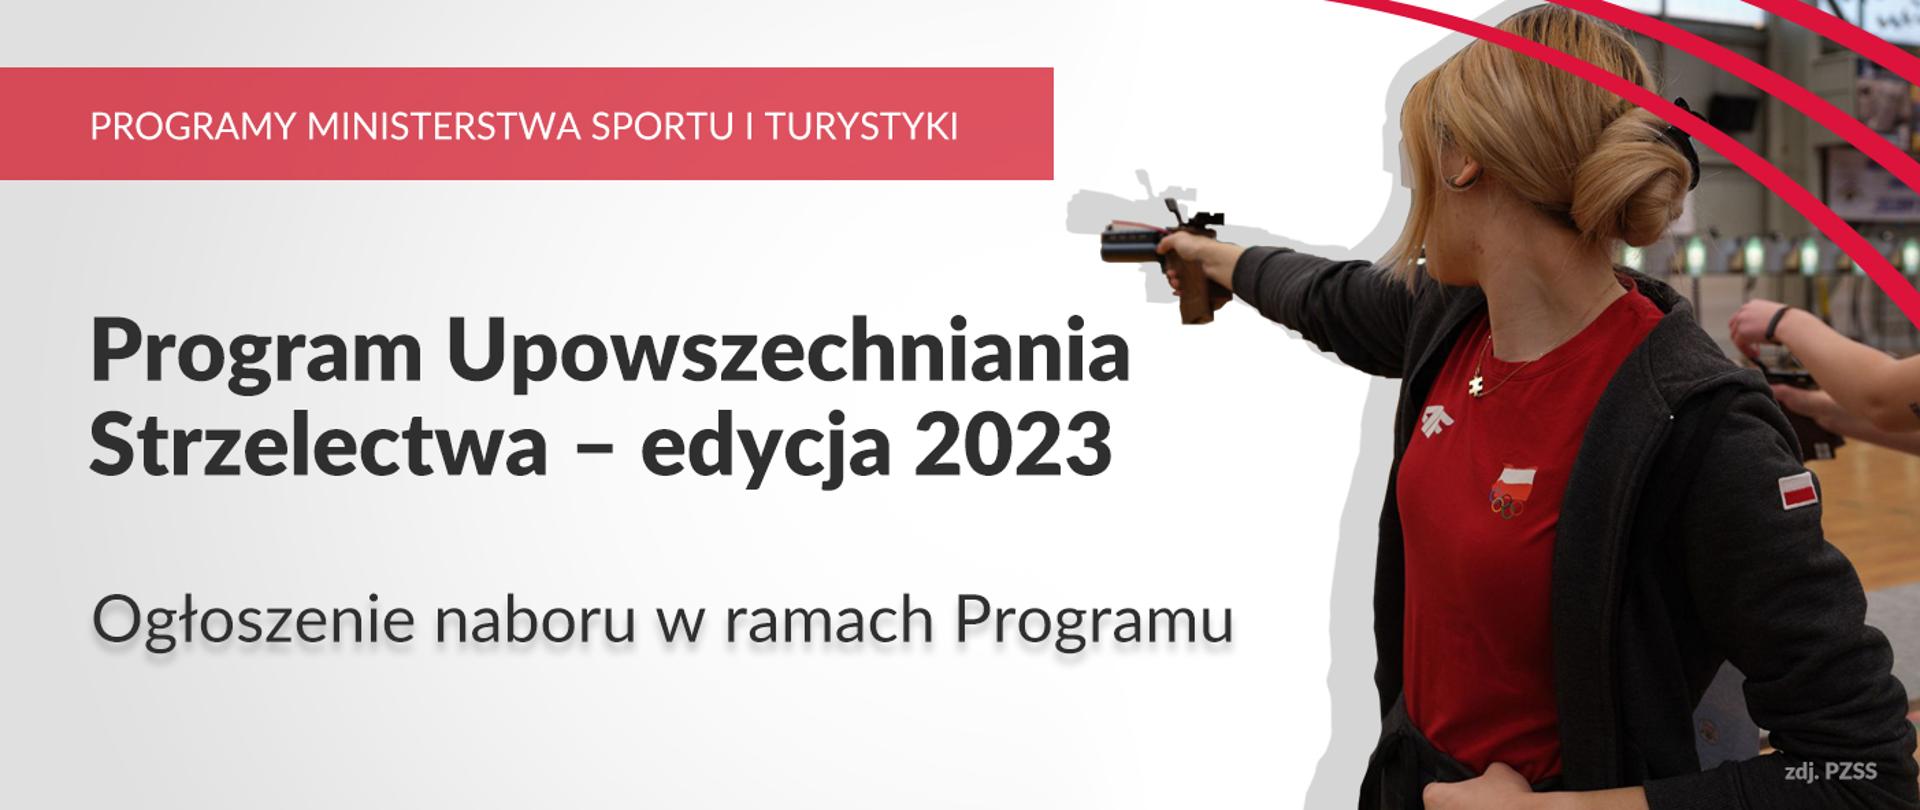 Na grafice od lewej strony znajdują się napisy: Programy Ministerstwa Sportu i Turystyki, Program Upowszechniania Strzelectwa - edycja 2023. Ogłoszenie naboru w ramach Programu. Po prawej stronie zdjęcie kobiety reprezentującej Polskę w strzelectwie sportowym.